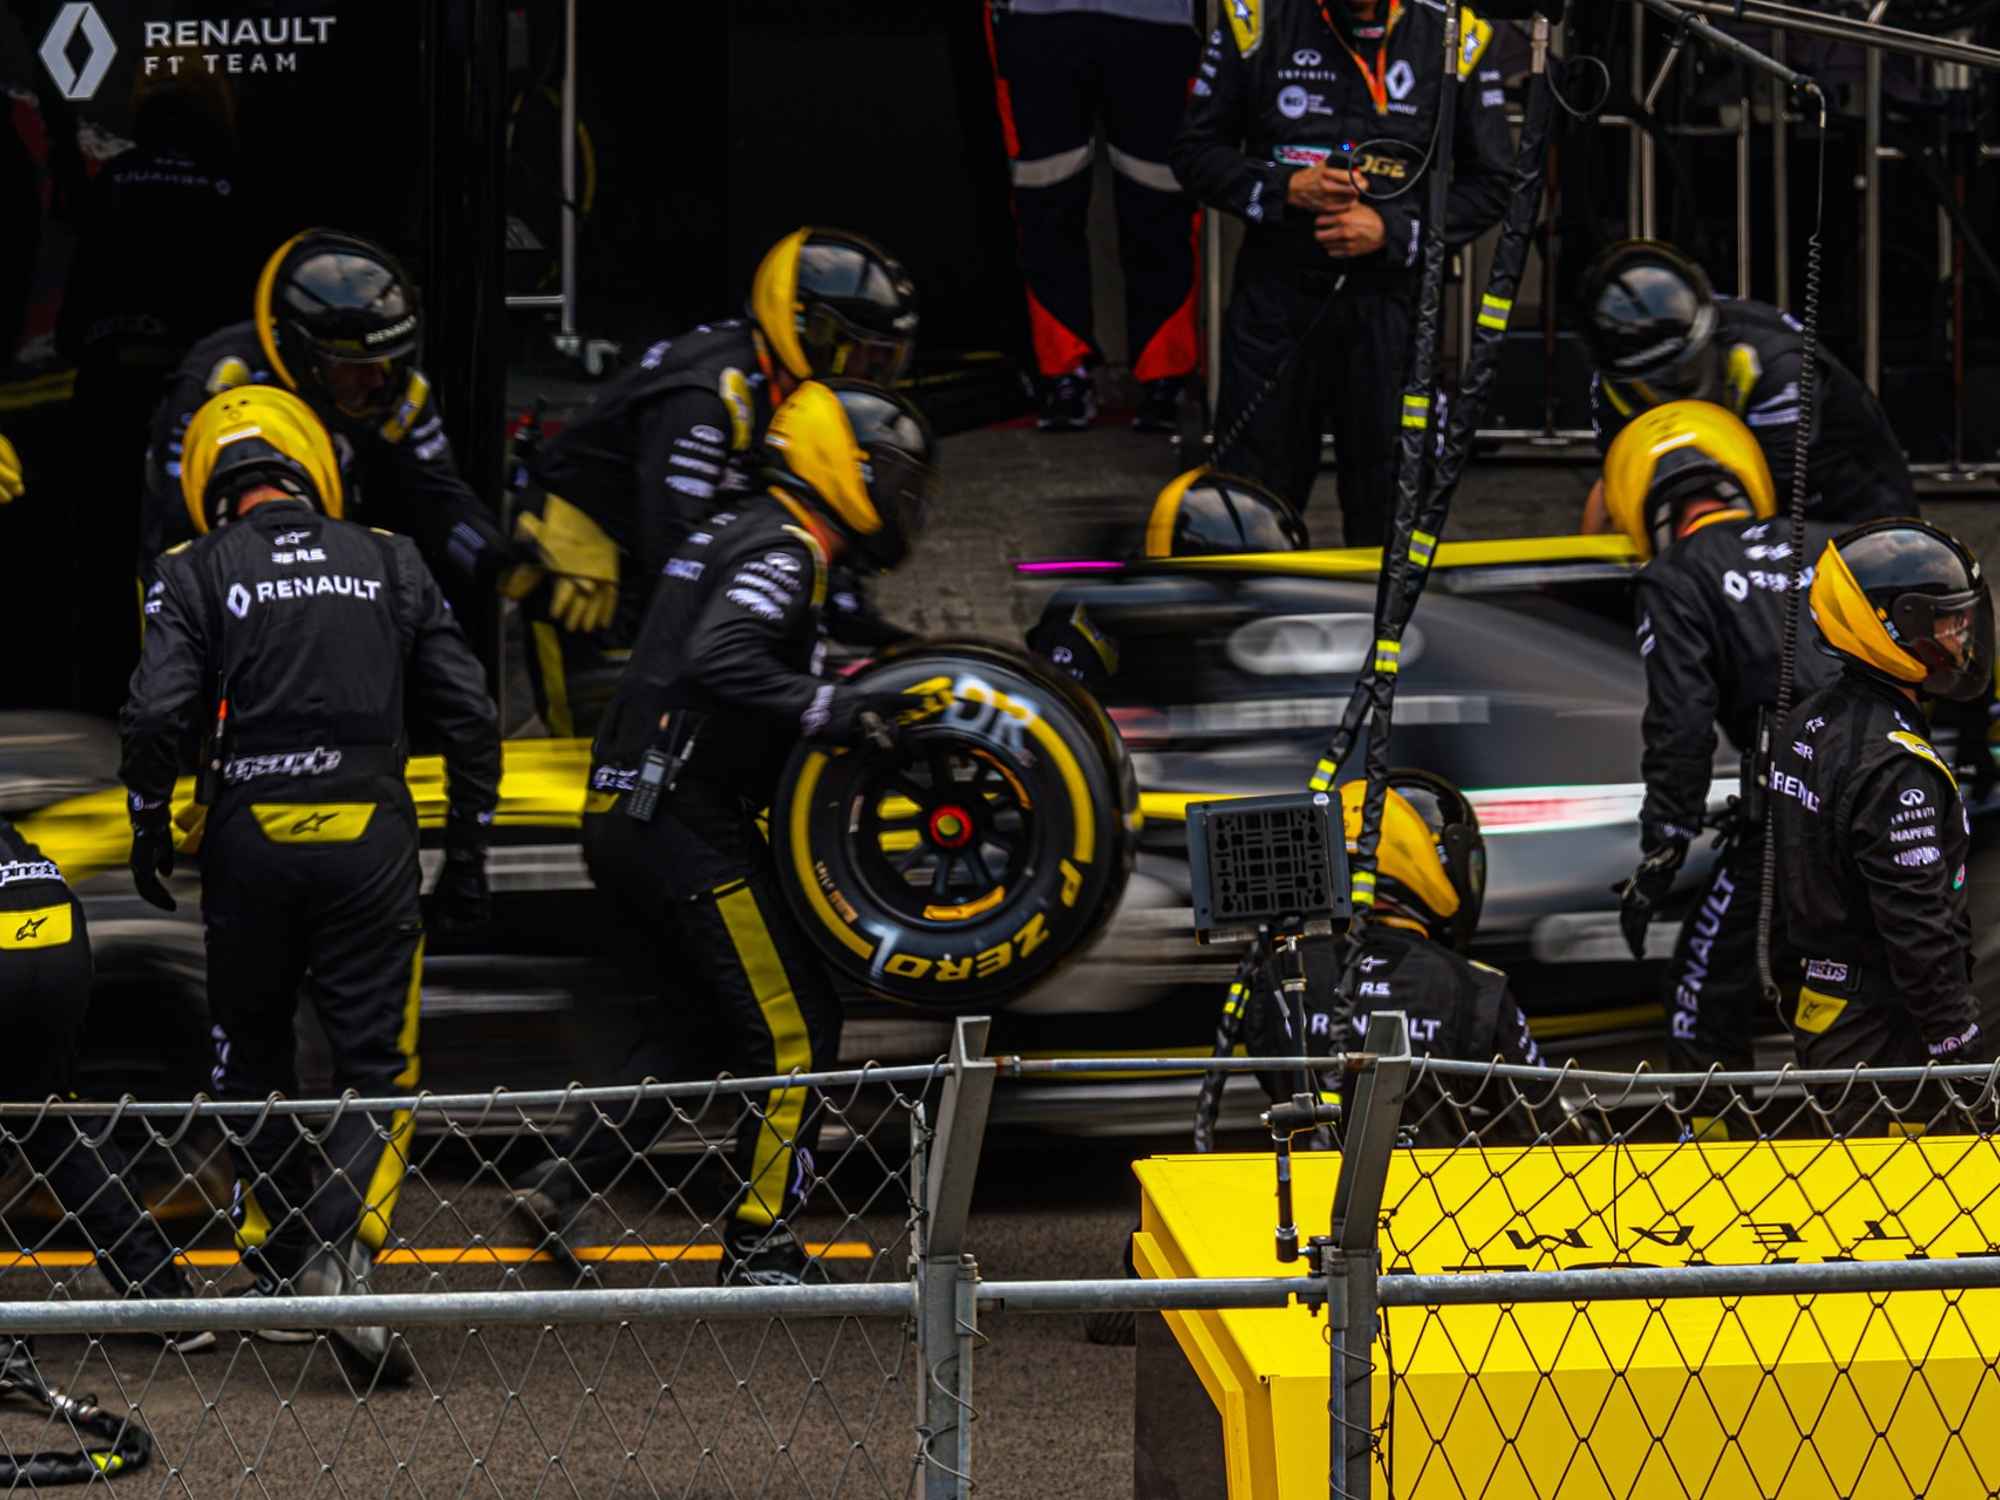 El equipo Renault F1 rechinando neumáticos.